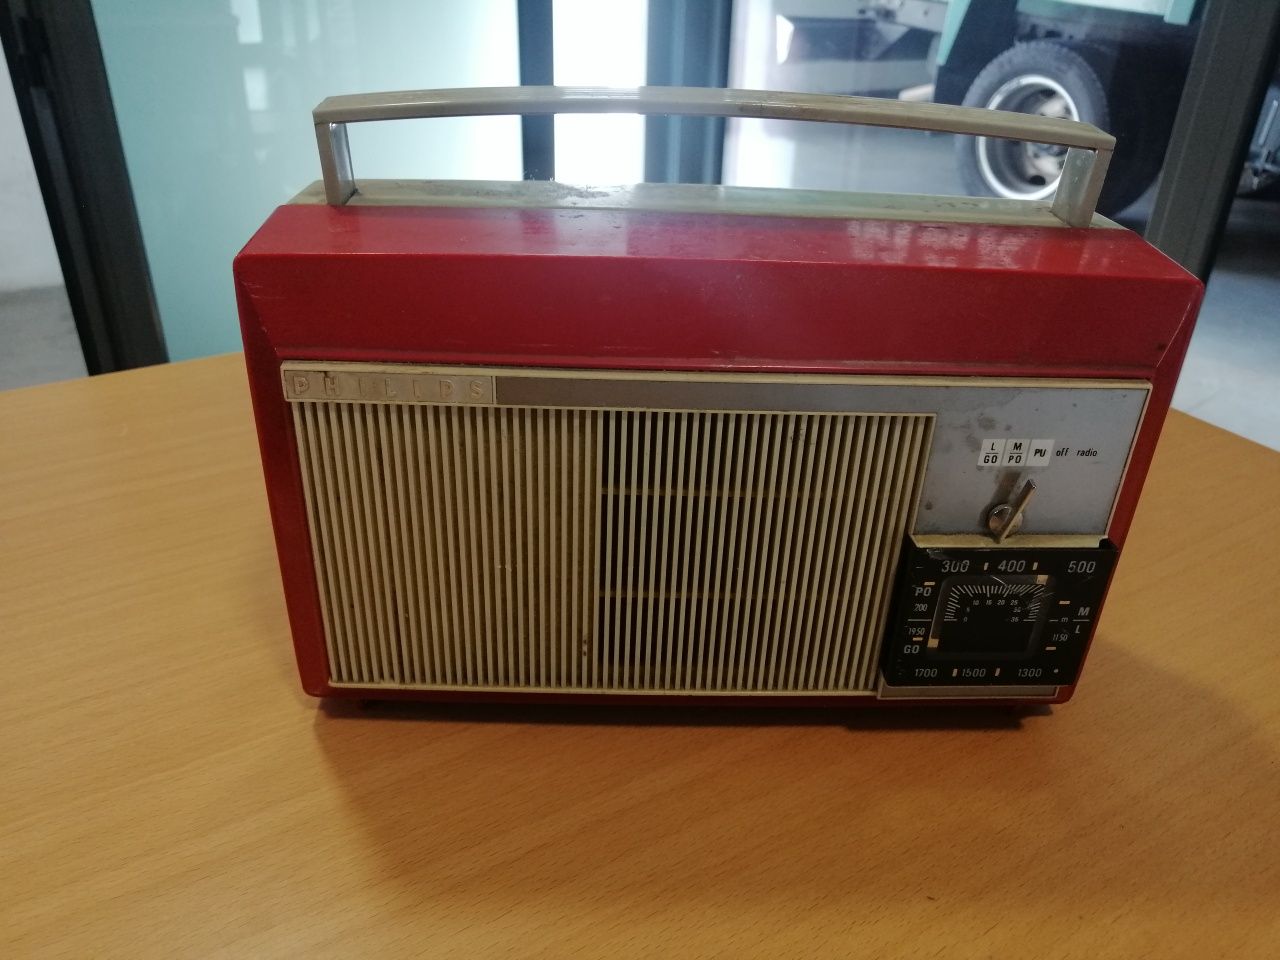 Gira discos / radio antigo da Philips